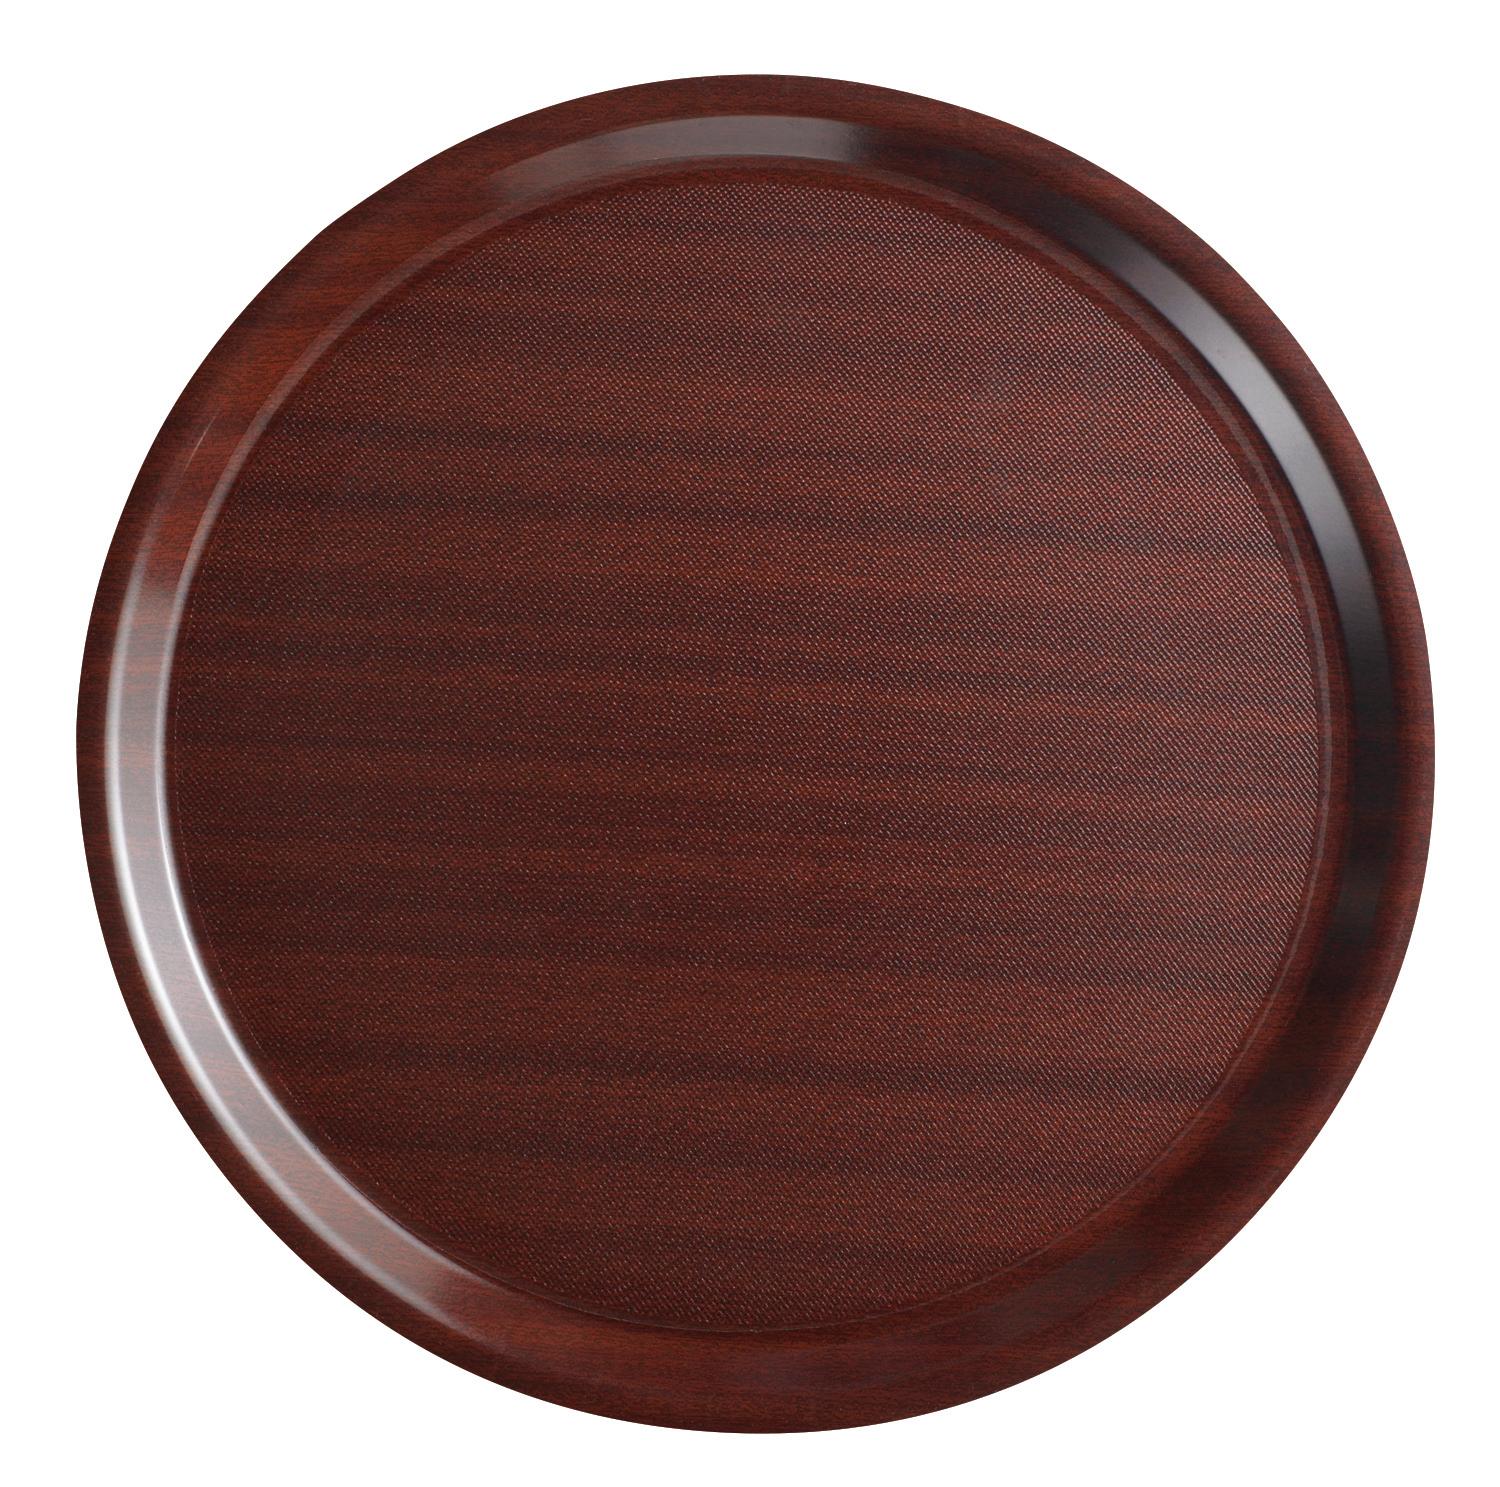 Mykonos laminate tray, round with non-slip surface, mahogany, 380 mm